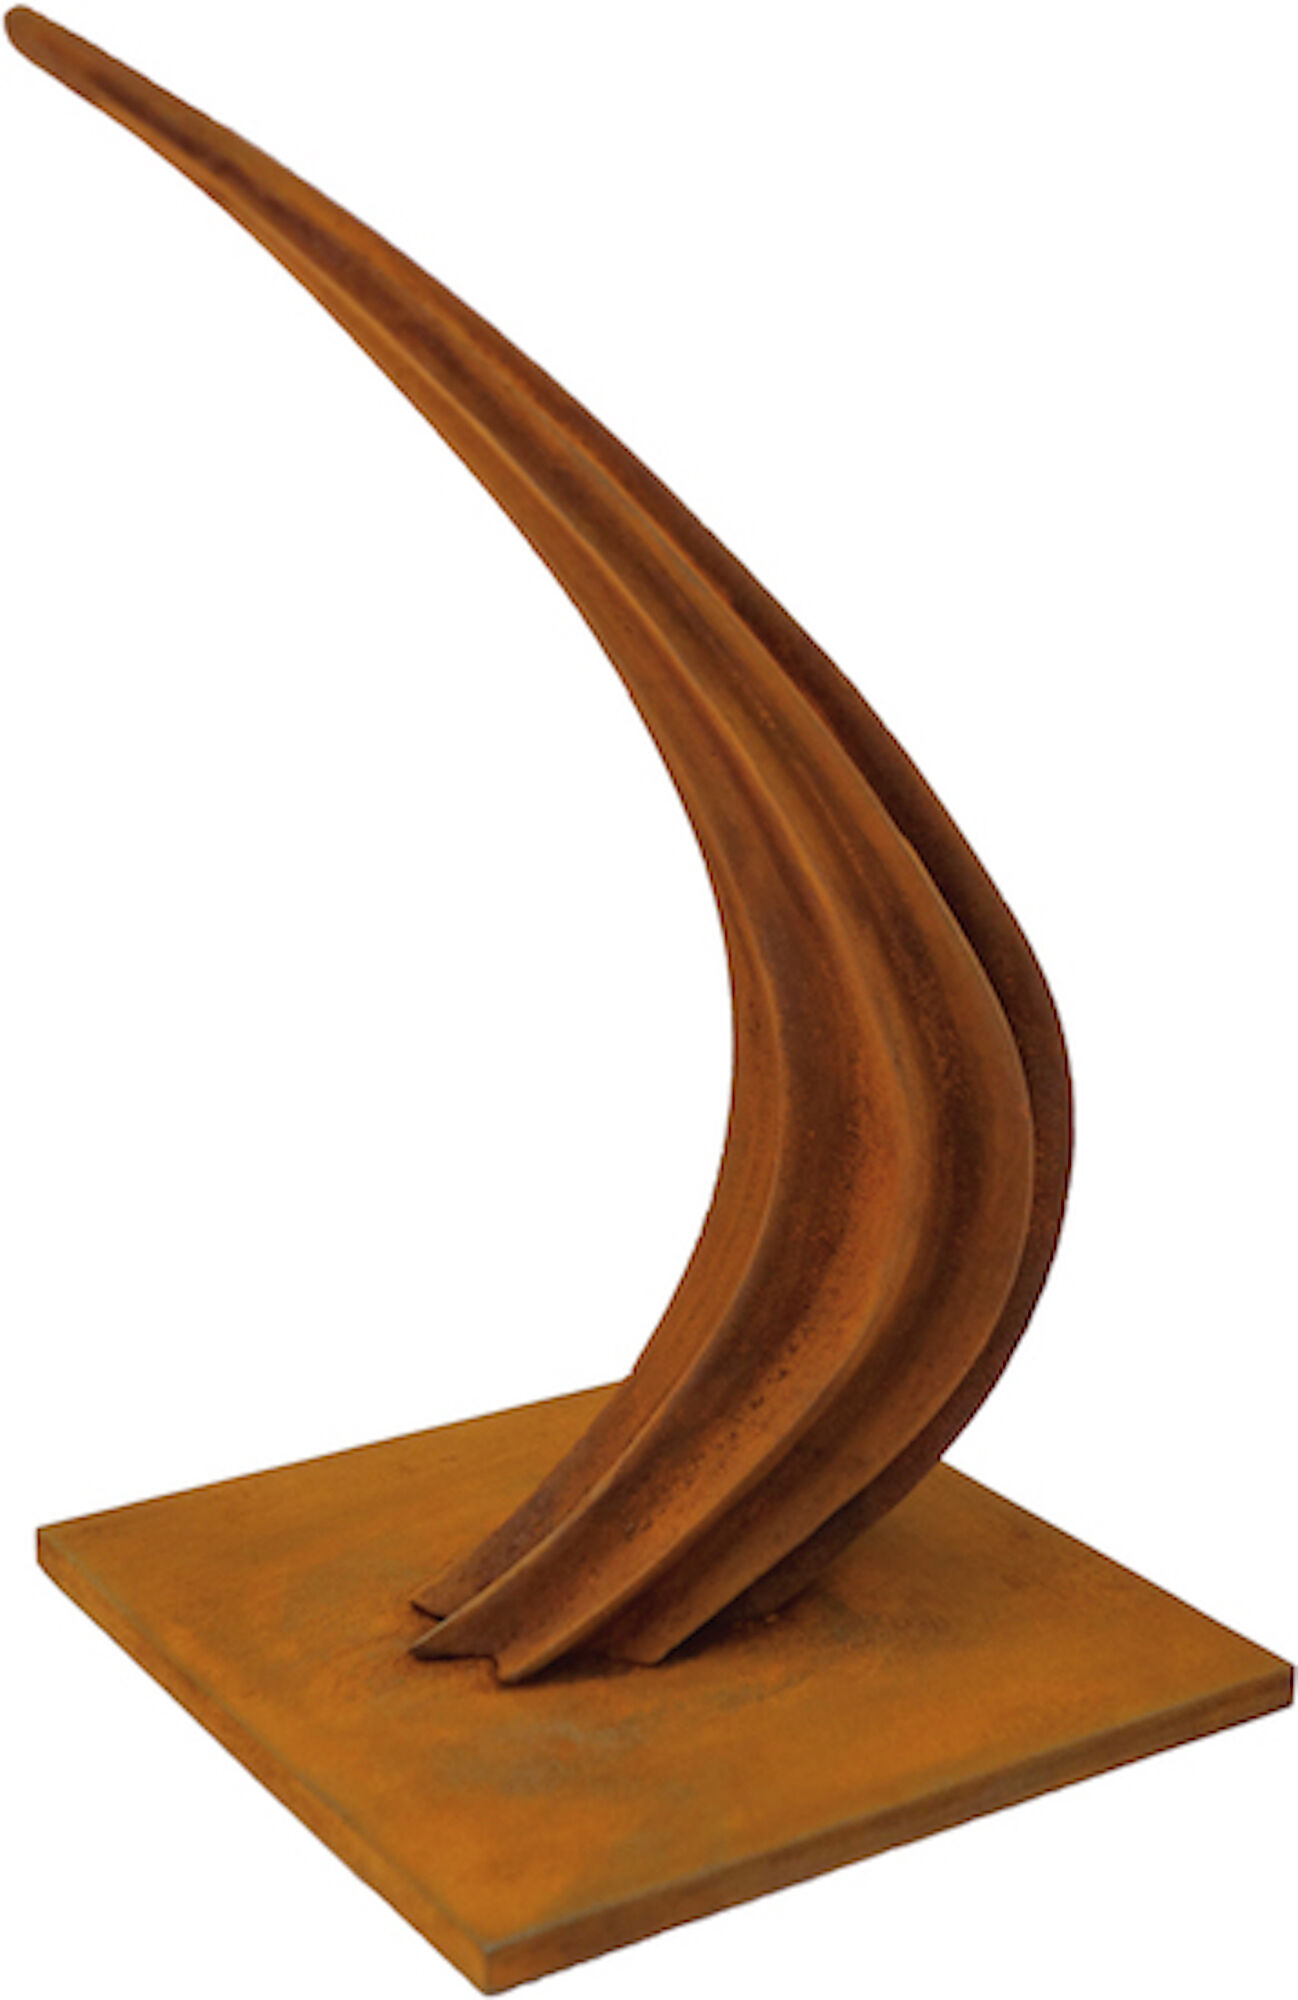 Sculpture "Vela" (2012) by Herbert Mehler